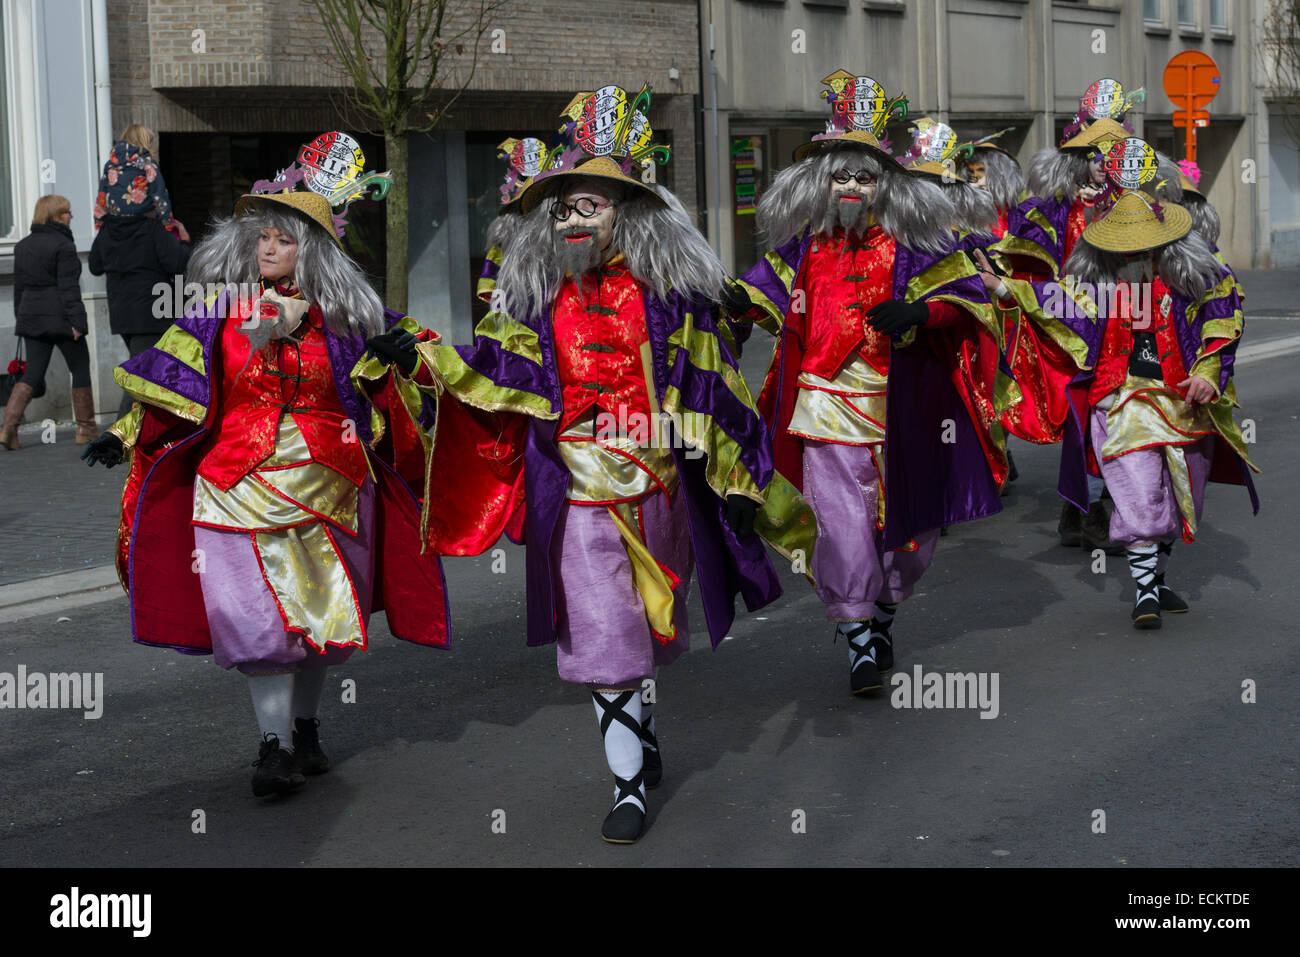 Karneval-Figuren verkleidete sich als rassistische chinesischen Stereotypen, in der traditionell offensive Aalst Karnevalszug Karneval Montag, Aalst, Belgien Stockfoto